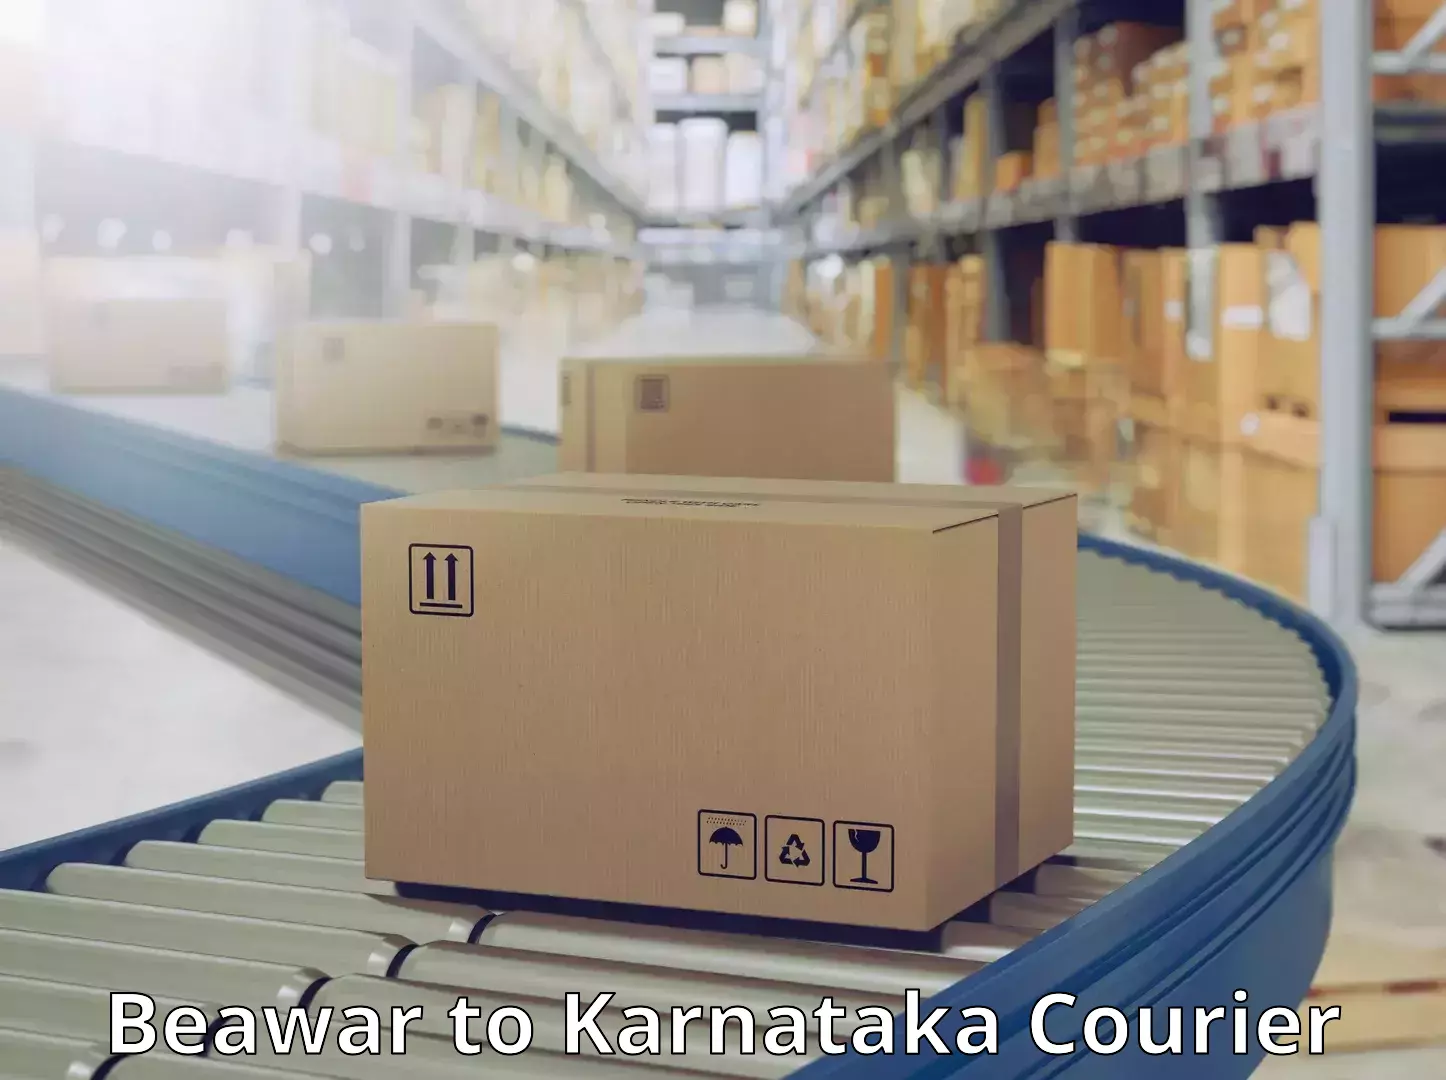 Courier service innovation Beawar to Karkala